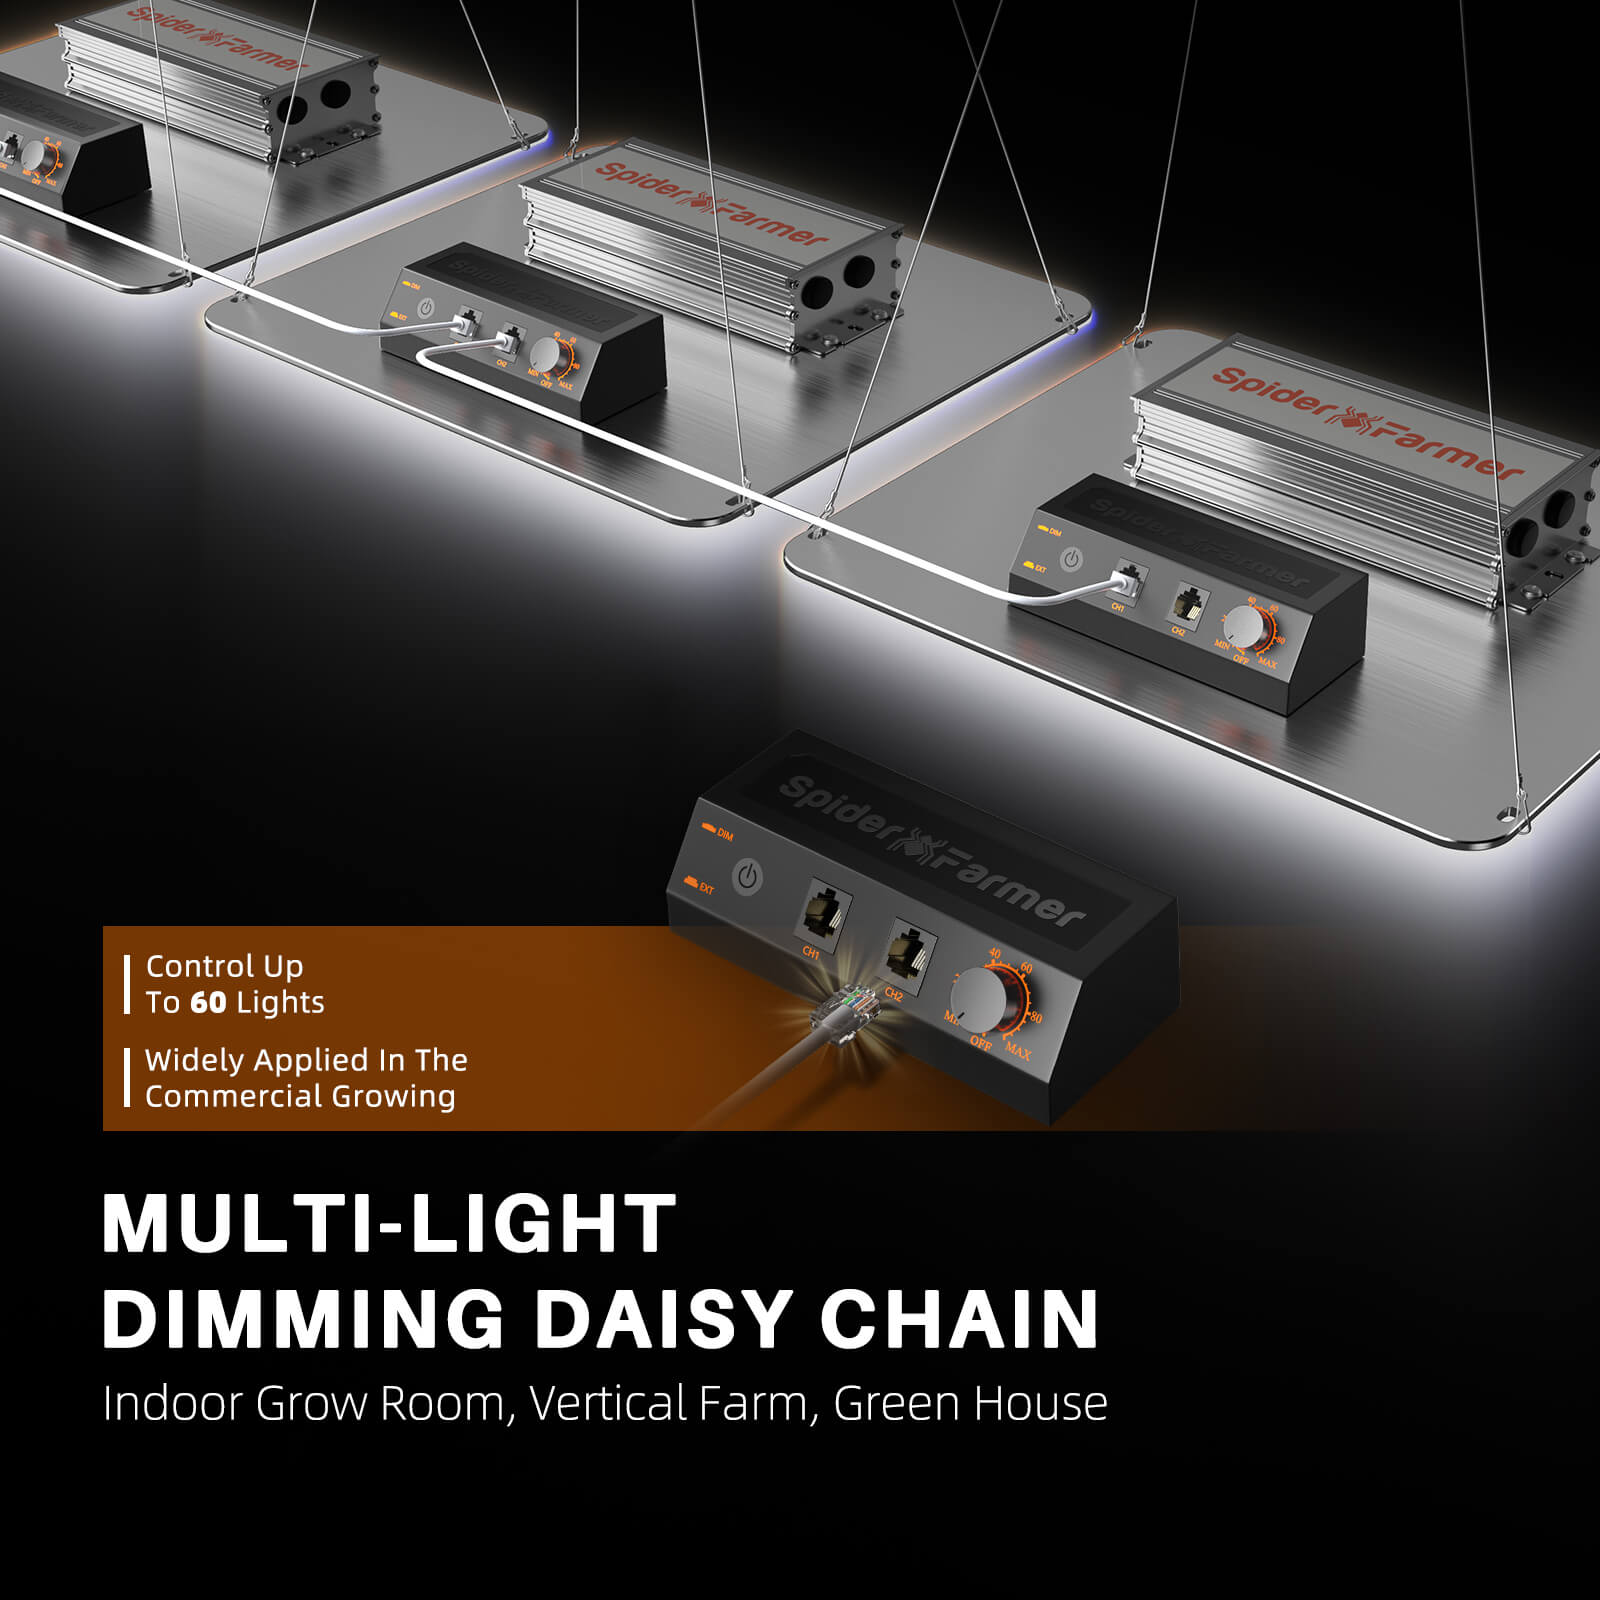 Spider Farmer® SF1000 Lumière de culture LED avec variateur de lumière